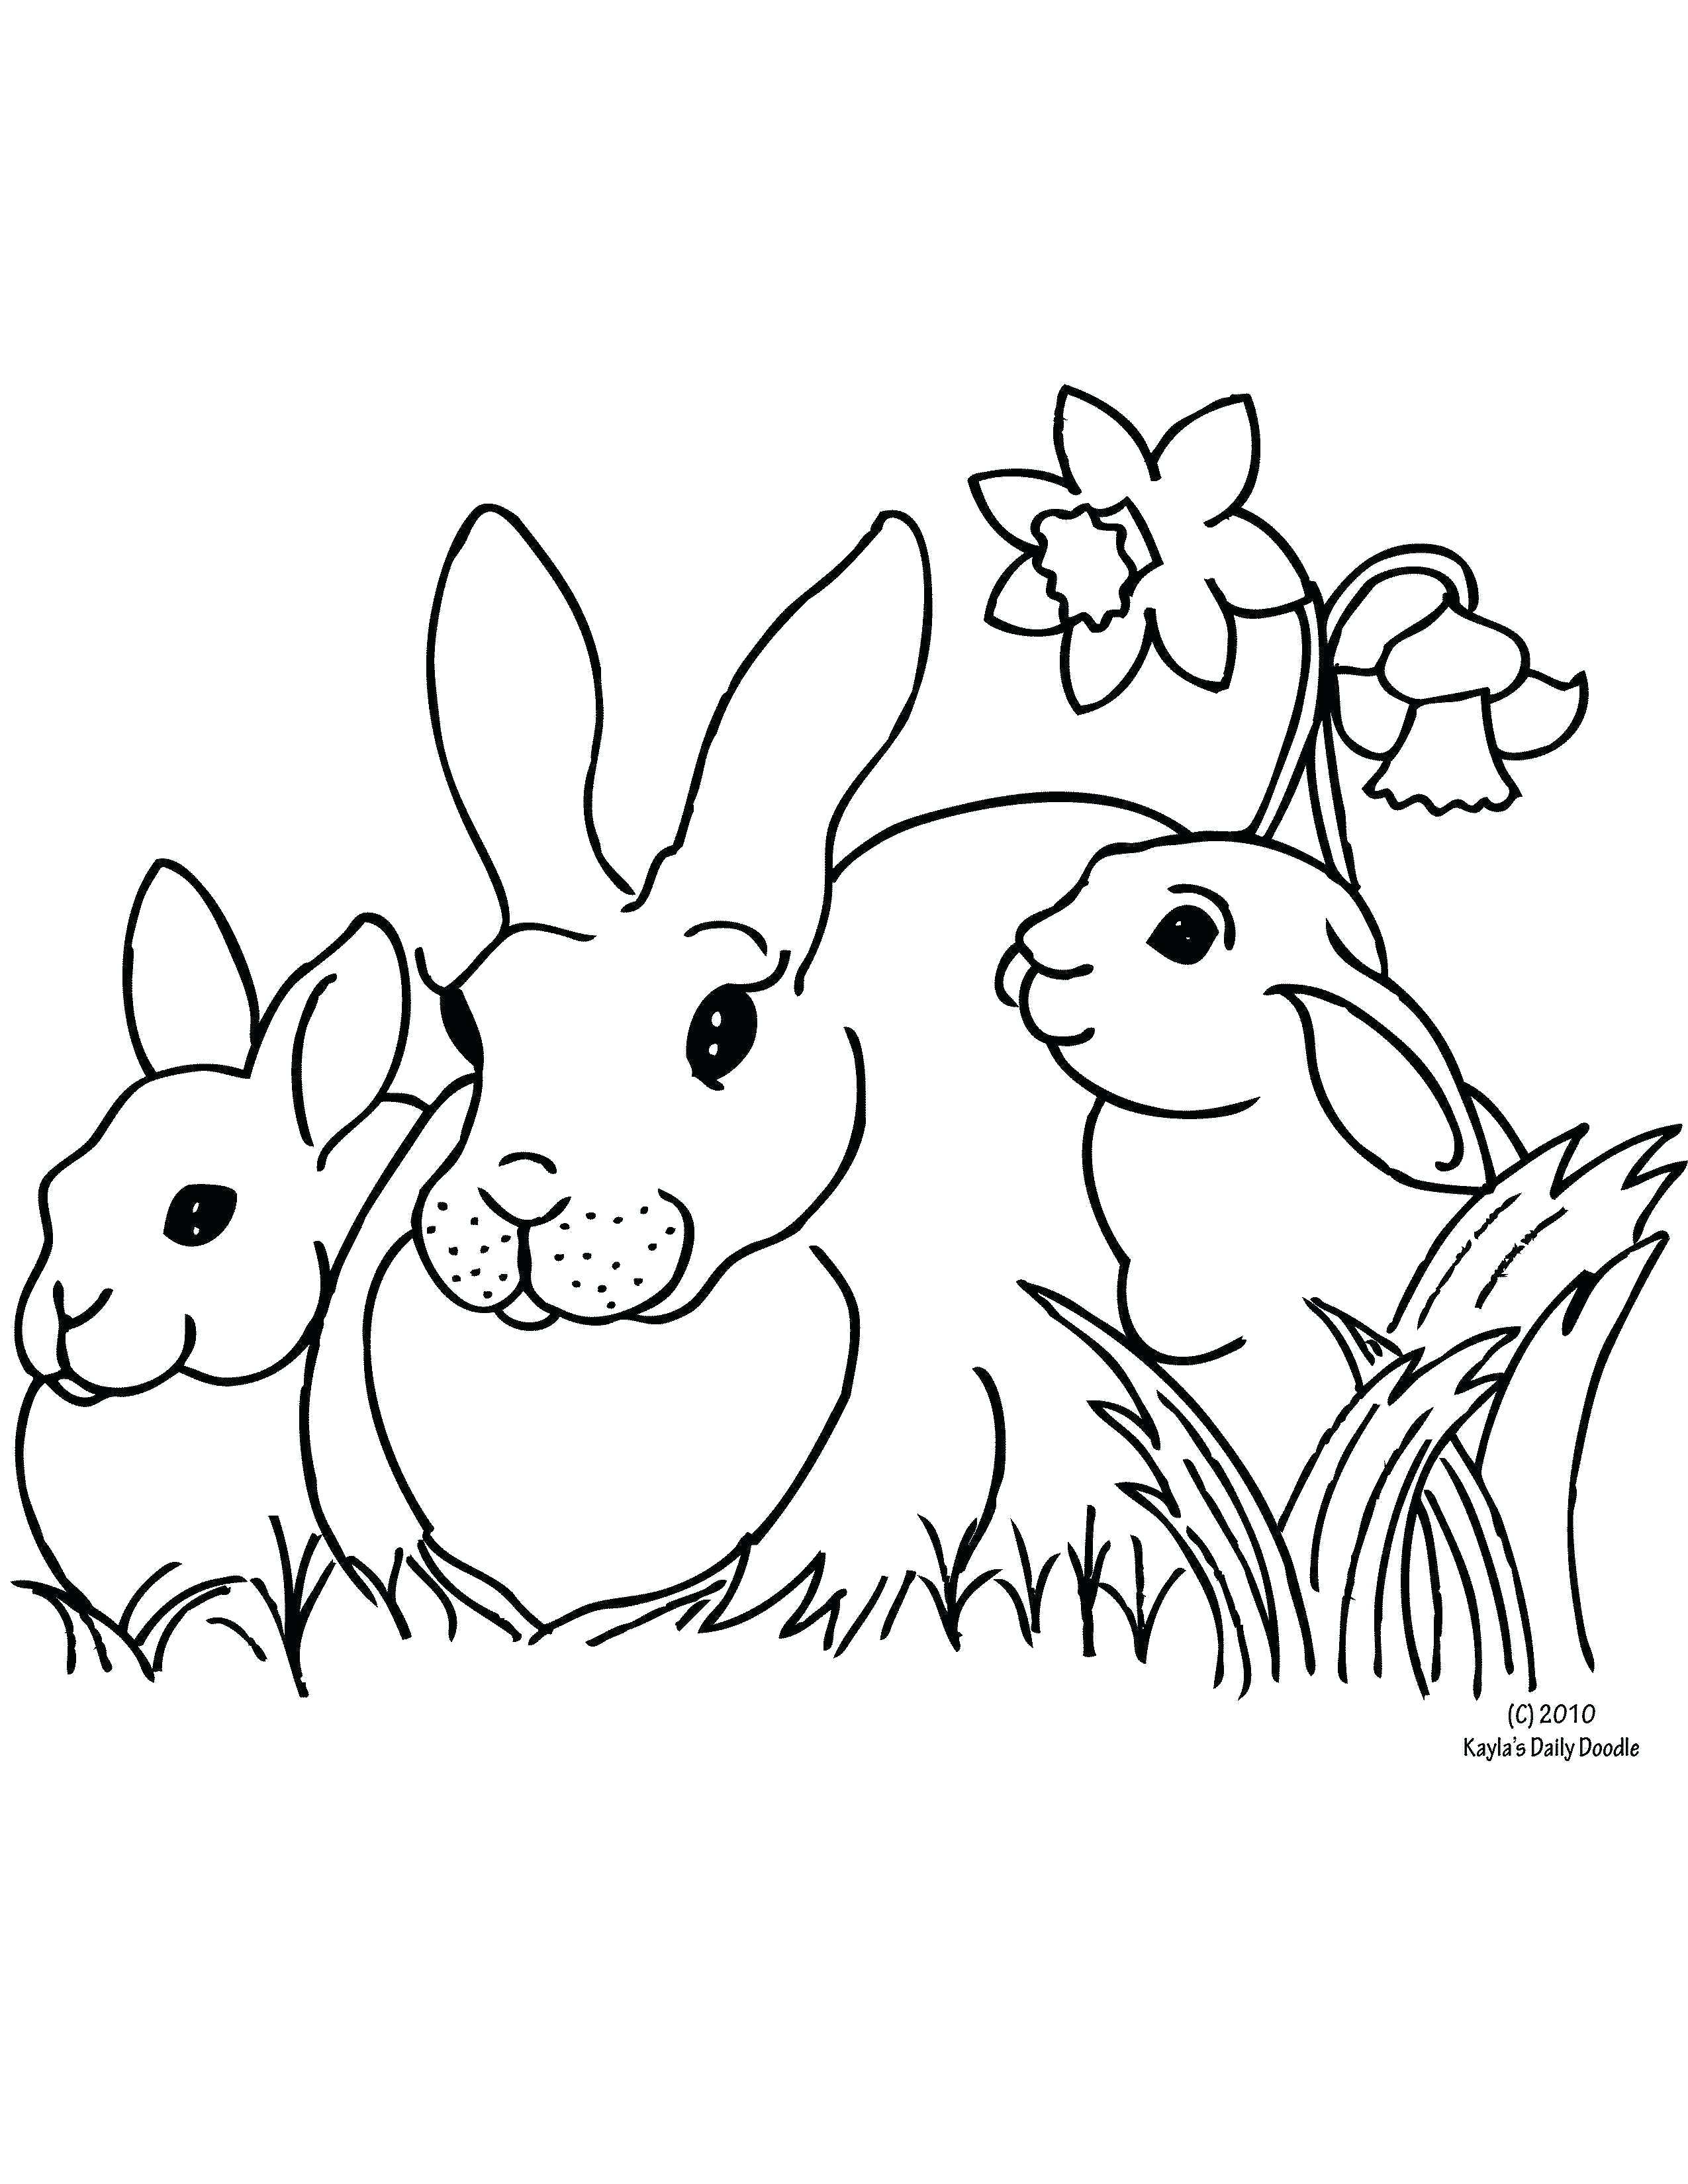 Tranh tô màu nhà ba bé thỏ đứng cạnh cành hoa